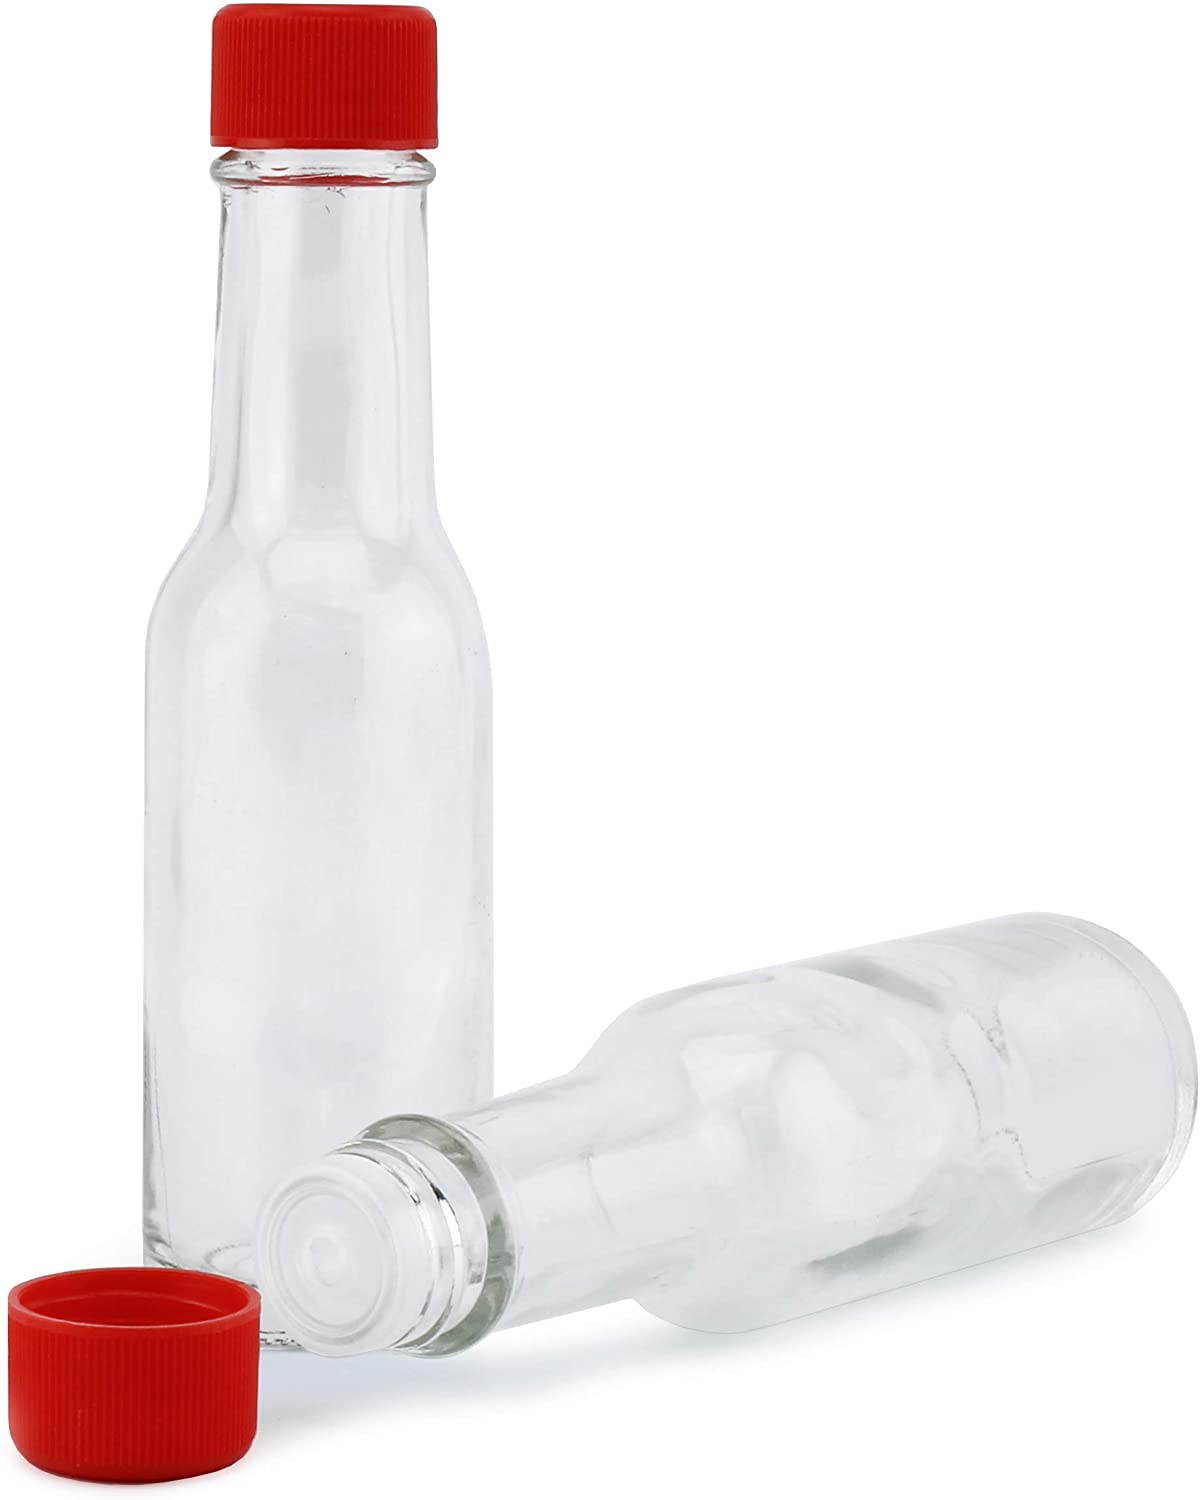 3oz Mini Hot Sauce Bottles (144-Pack) - SH_1577_CASE